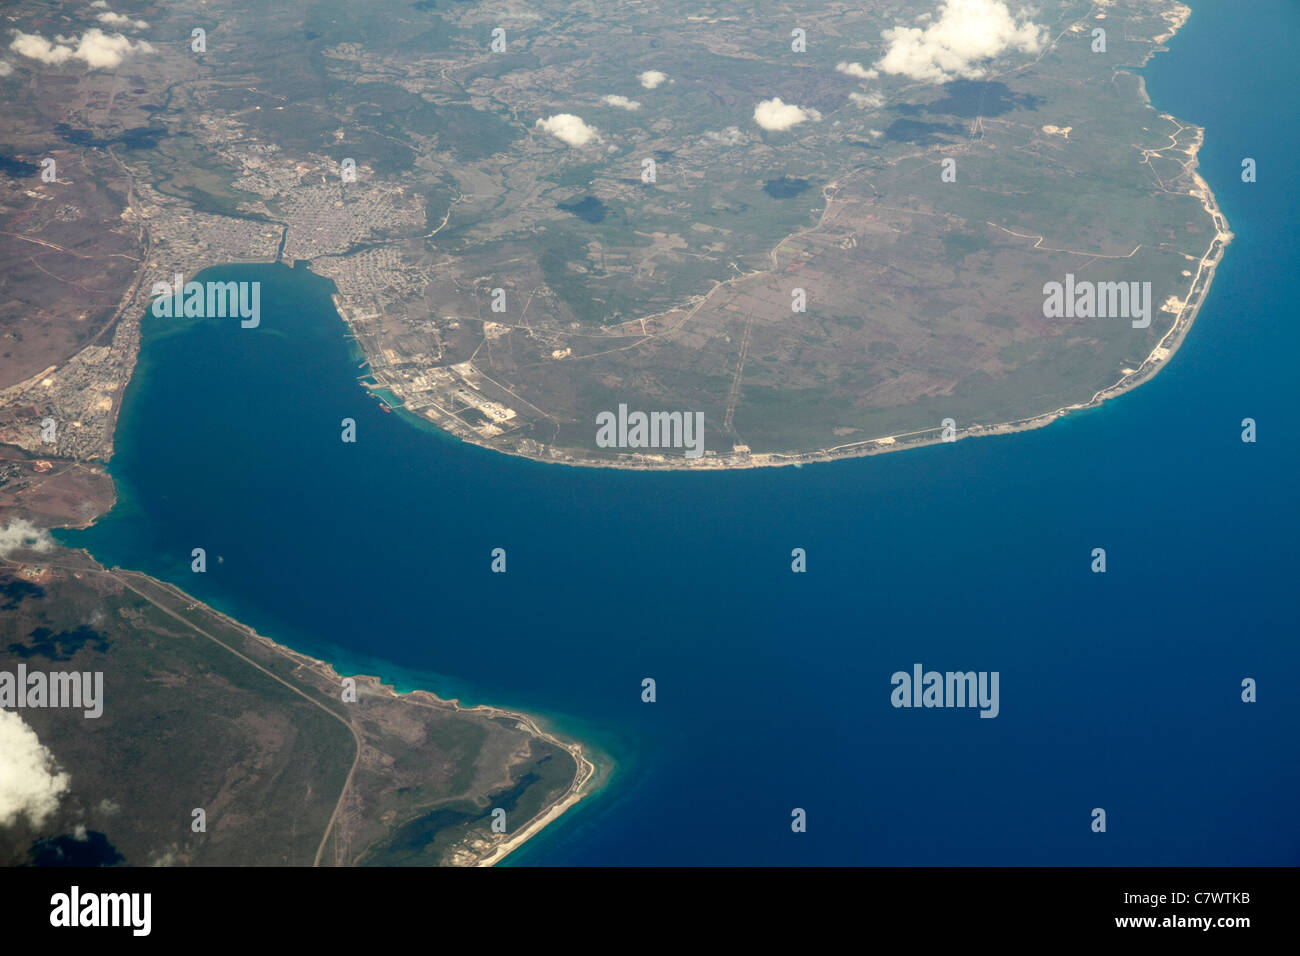 Cuba,Matanzas,eaux de la mer des Caraïbes Bahia de Matanzas,baie,port,port,vue aérienne depuis le dessus,35,000 pieds,terre,nuages,eau,géographie,topogra Banque D'Images